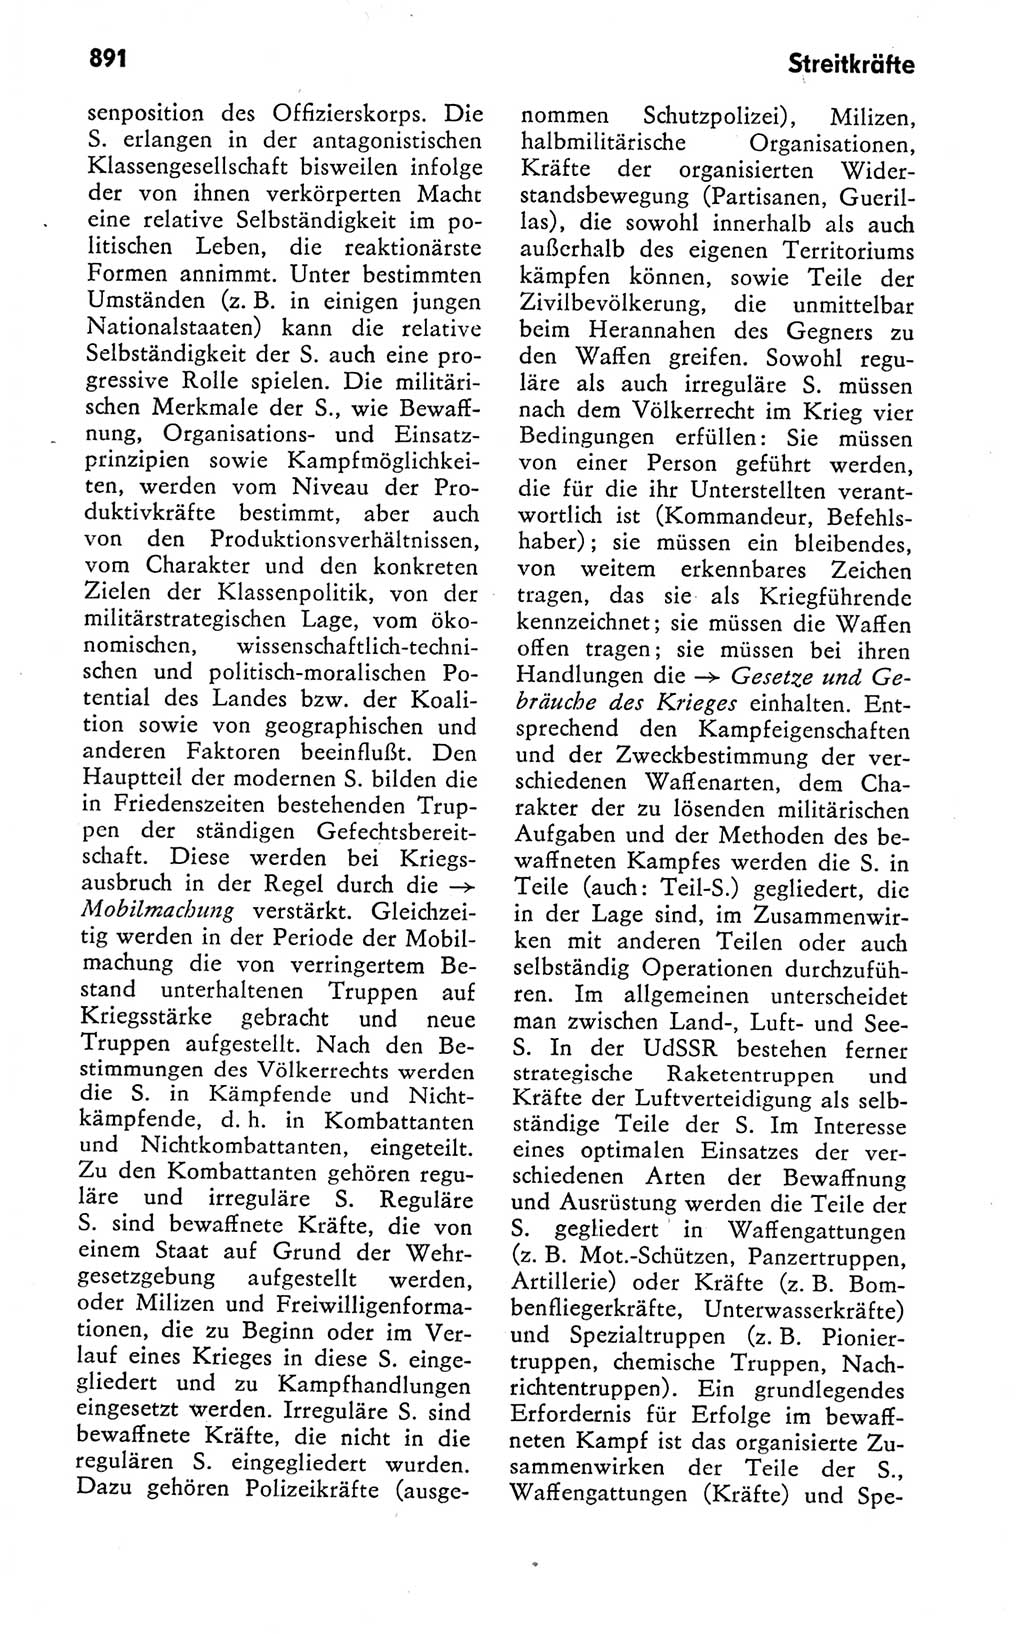 Kleines politisches Wörterbuch [Deutsche Demokratische Republik (DDR)] 1978, Seite 891 (Kl. pol. Wb. DDR 1978, S. 891)